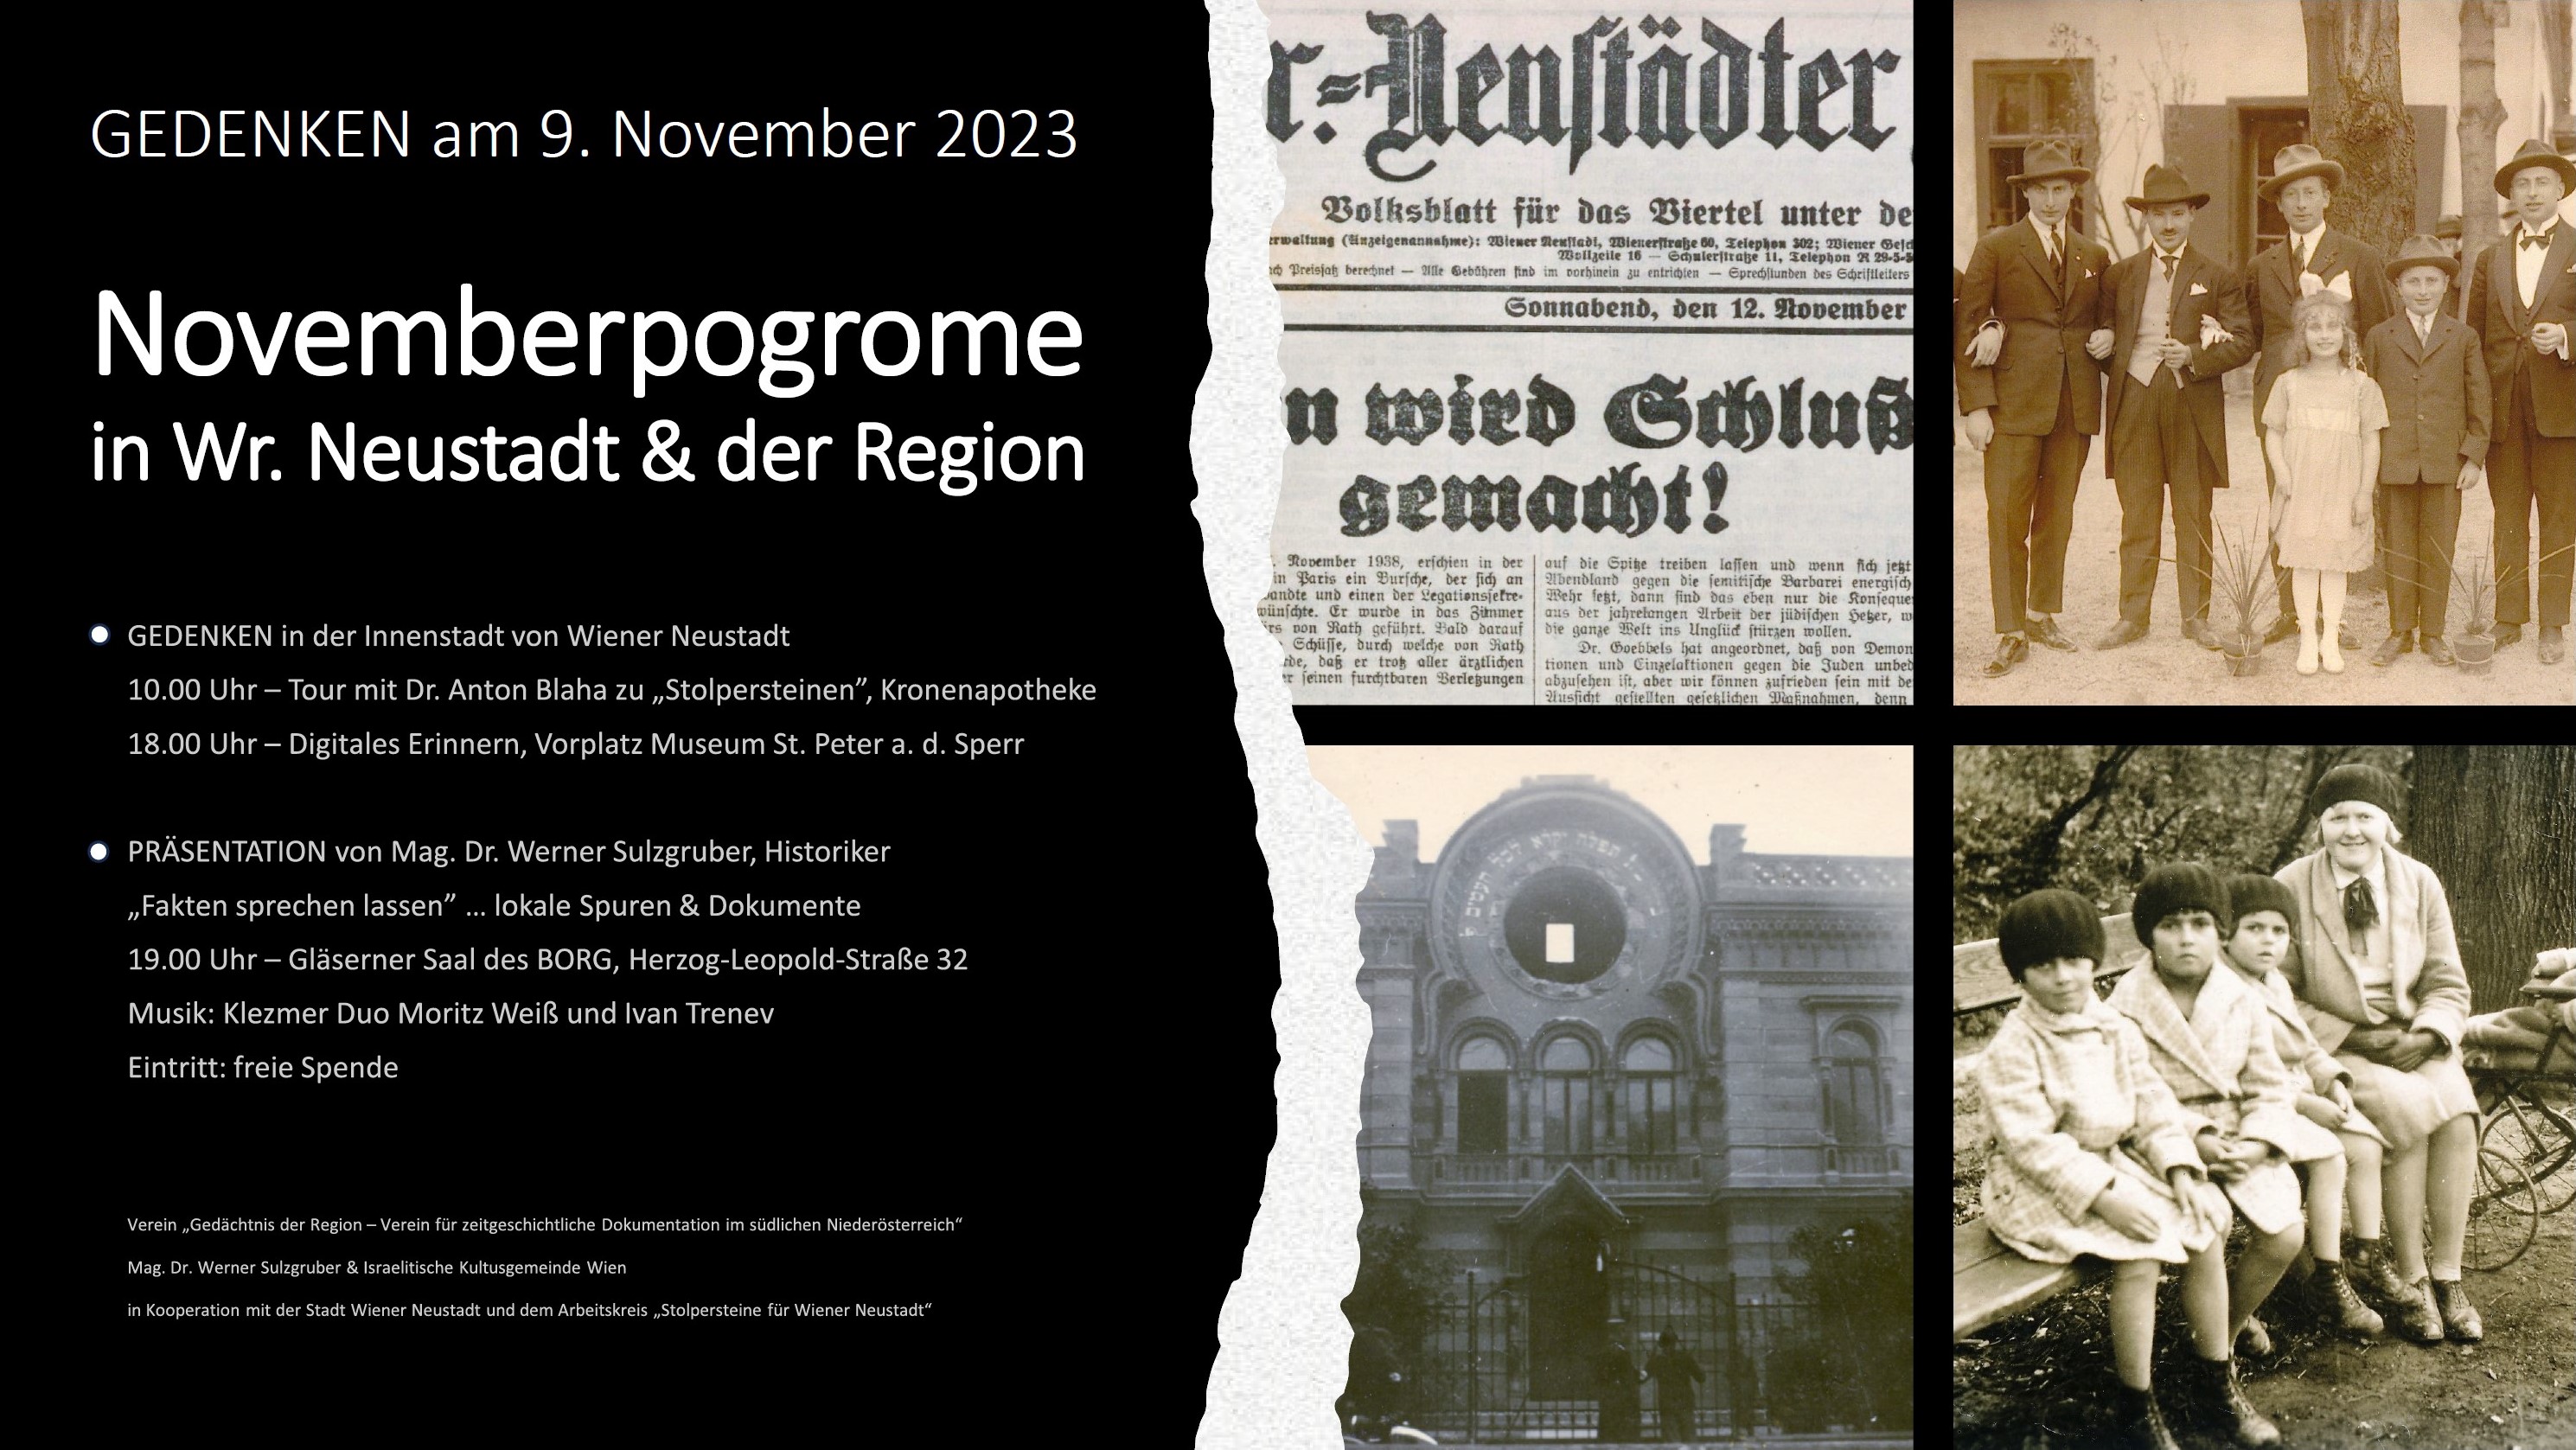 Gedenkveranstaltungen am 9 Nov 2023 in Wiener Neustadt.jpg